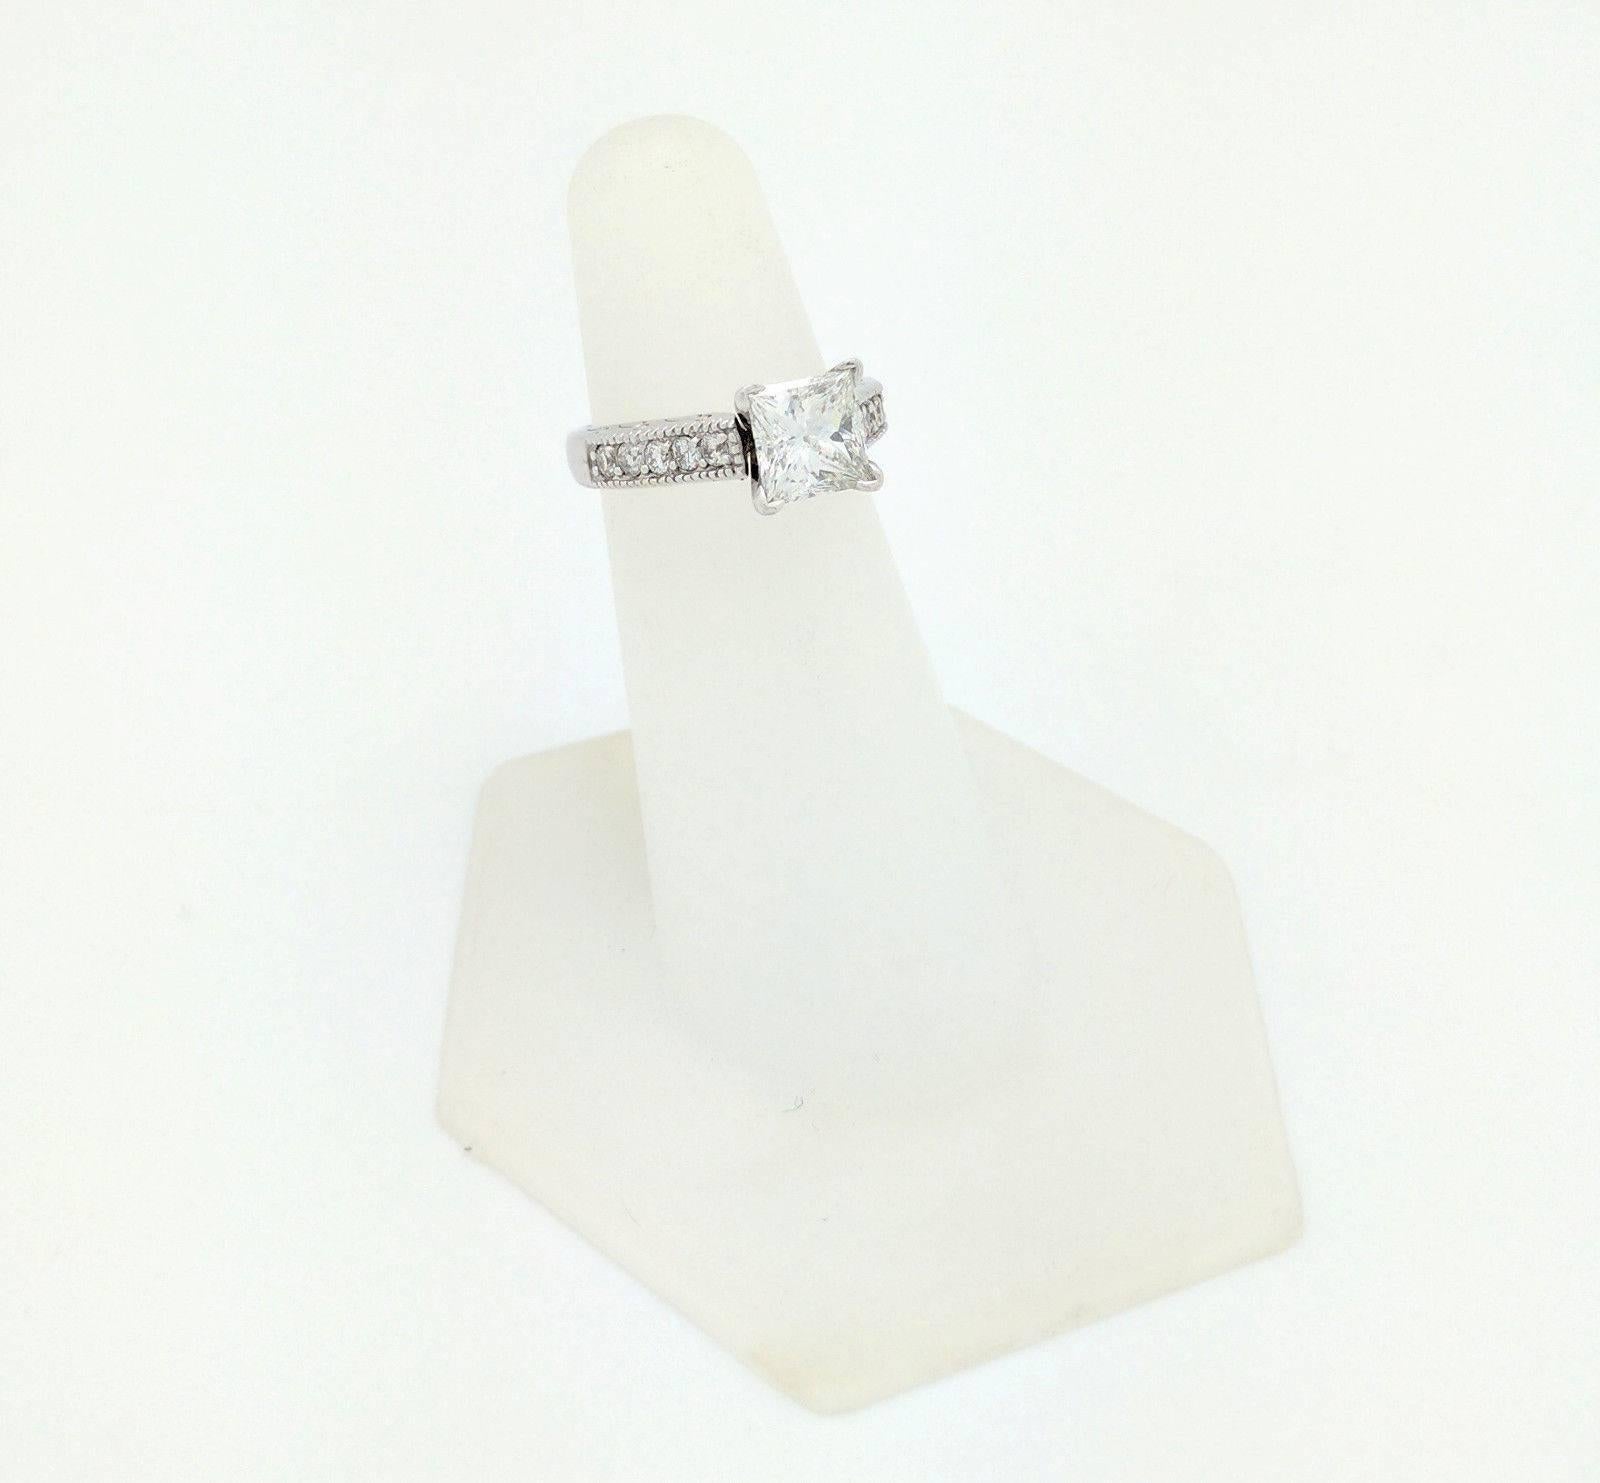 14 Karat White Gold 1.85 Carat Princess Cut Diamond Engagement Ring VS2/H 2